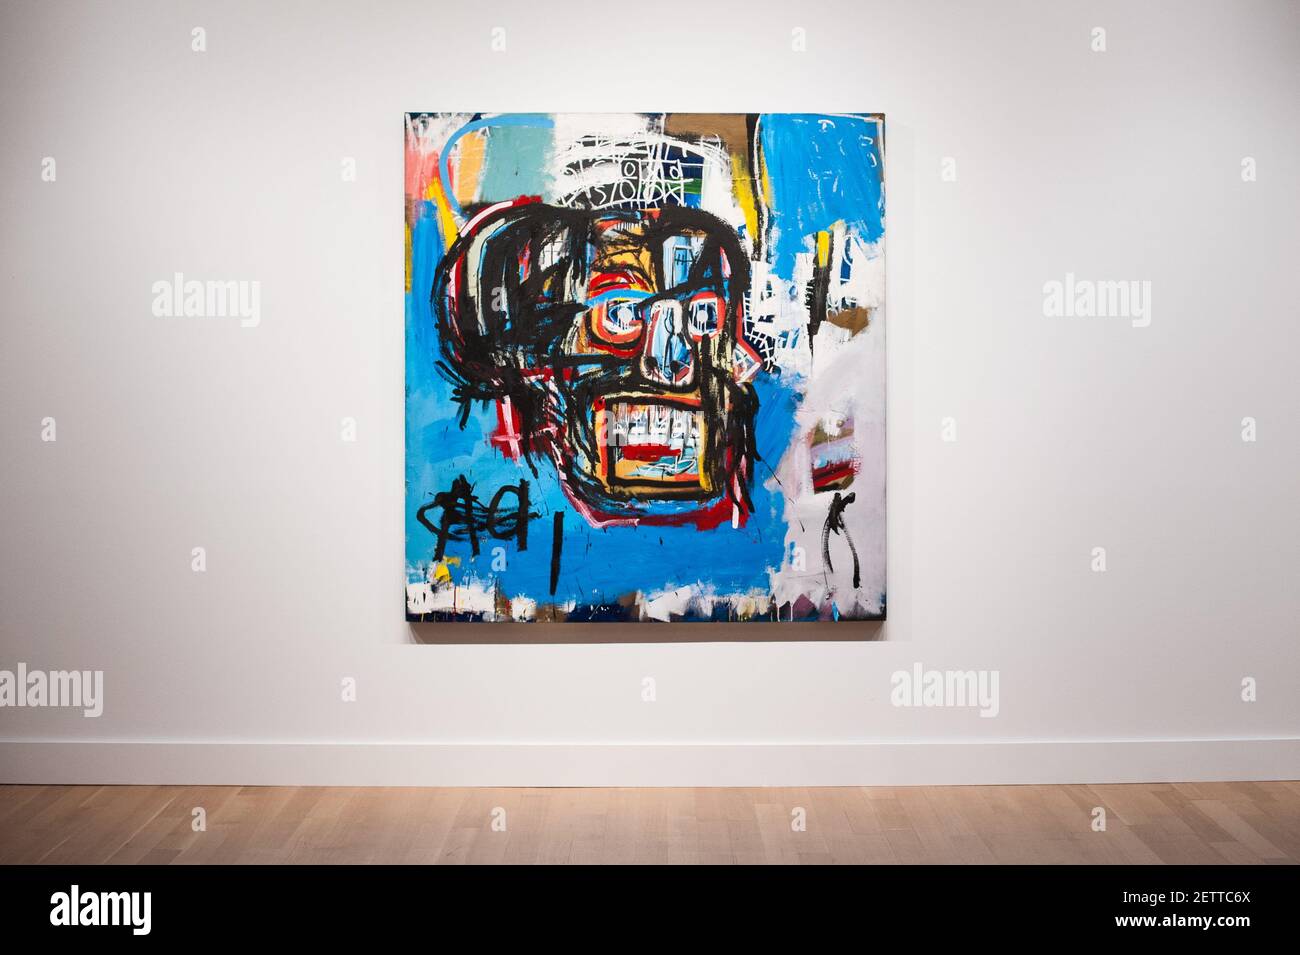 La pintura de Jean-Michel Basquiat de 1982, "Untitled", se vendió por  $110.5 millones en Sotheby's en Nueva York el jueves, 18 de mayo de 2017,  para convertirse en el sexto trabajo más